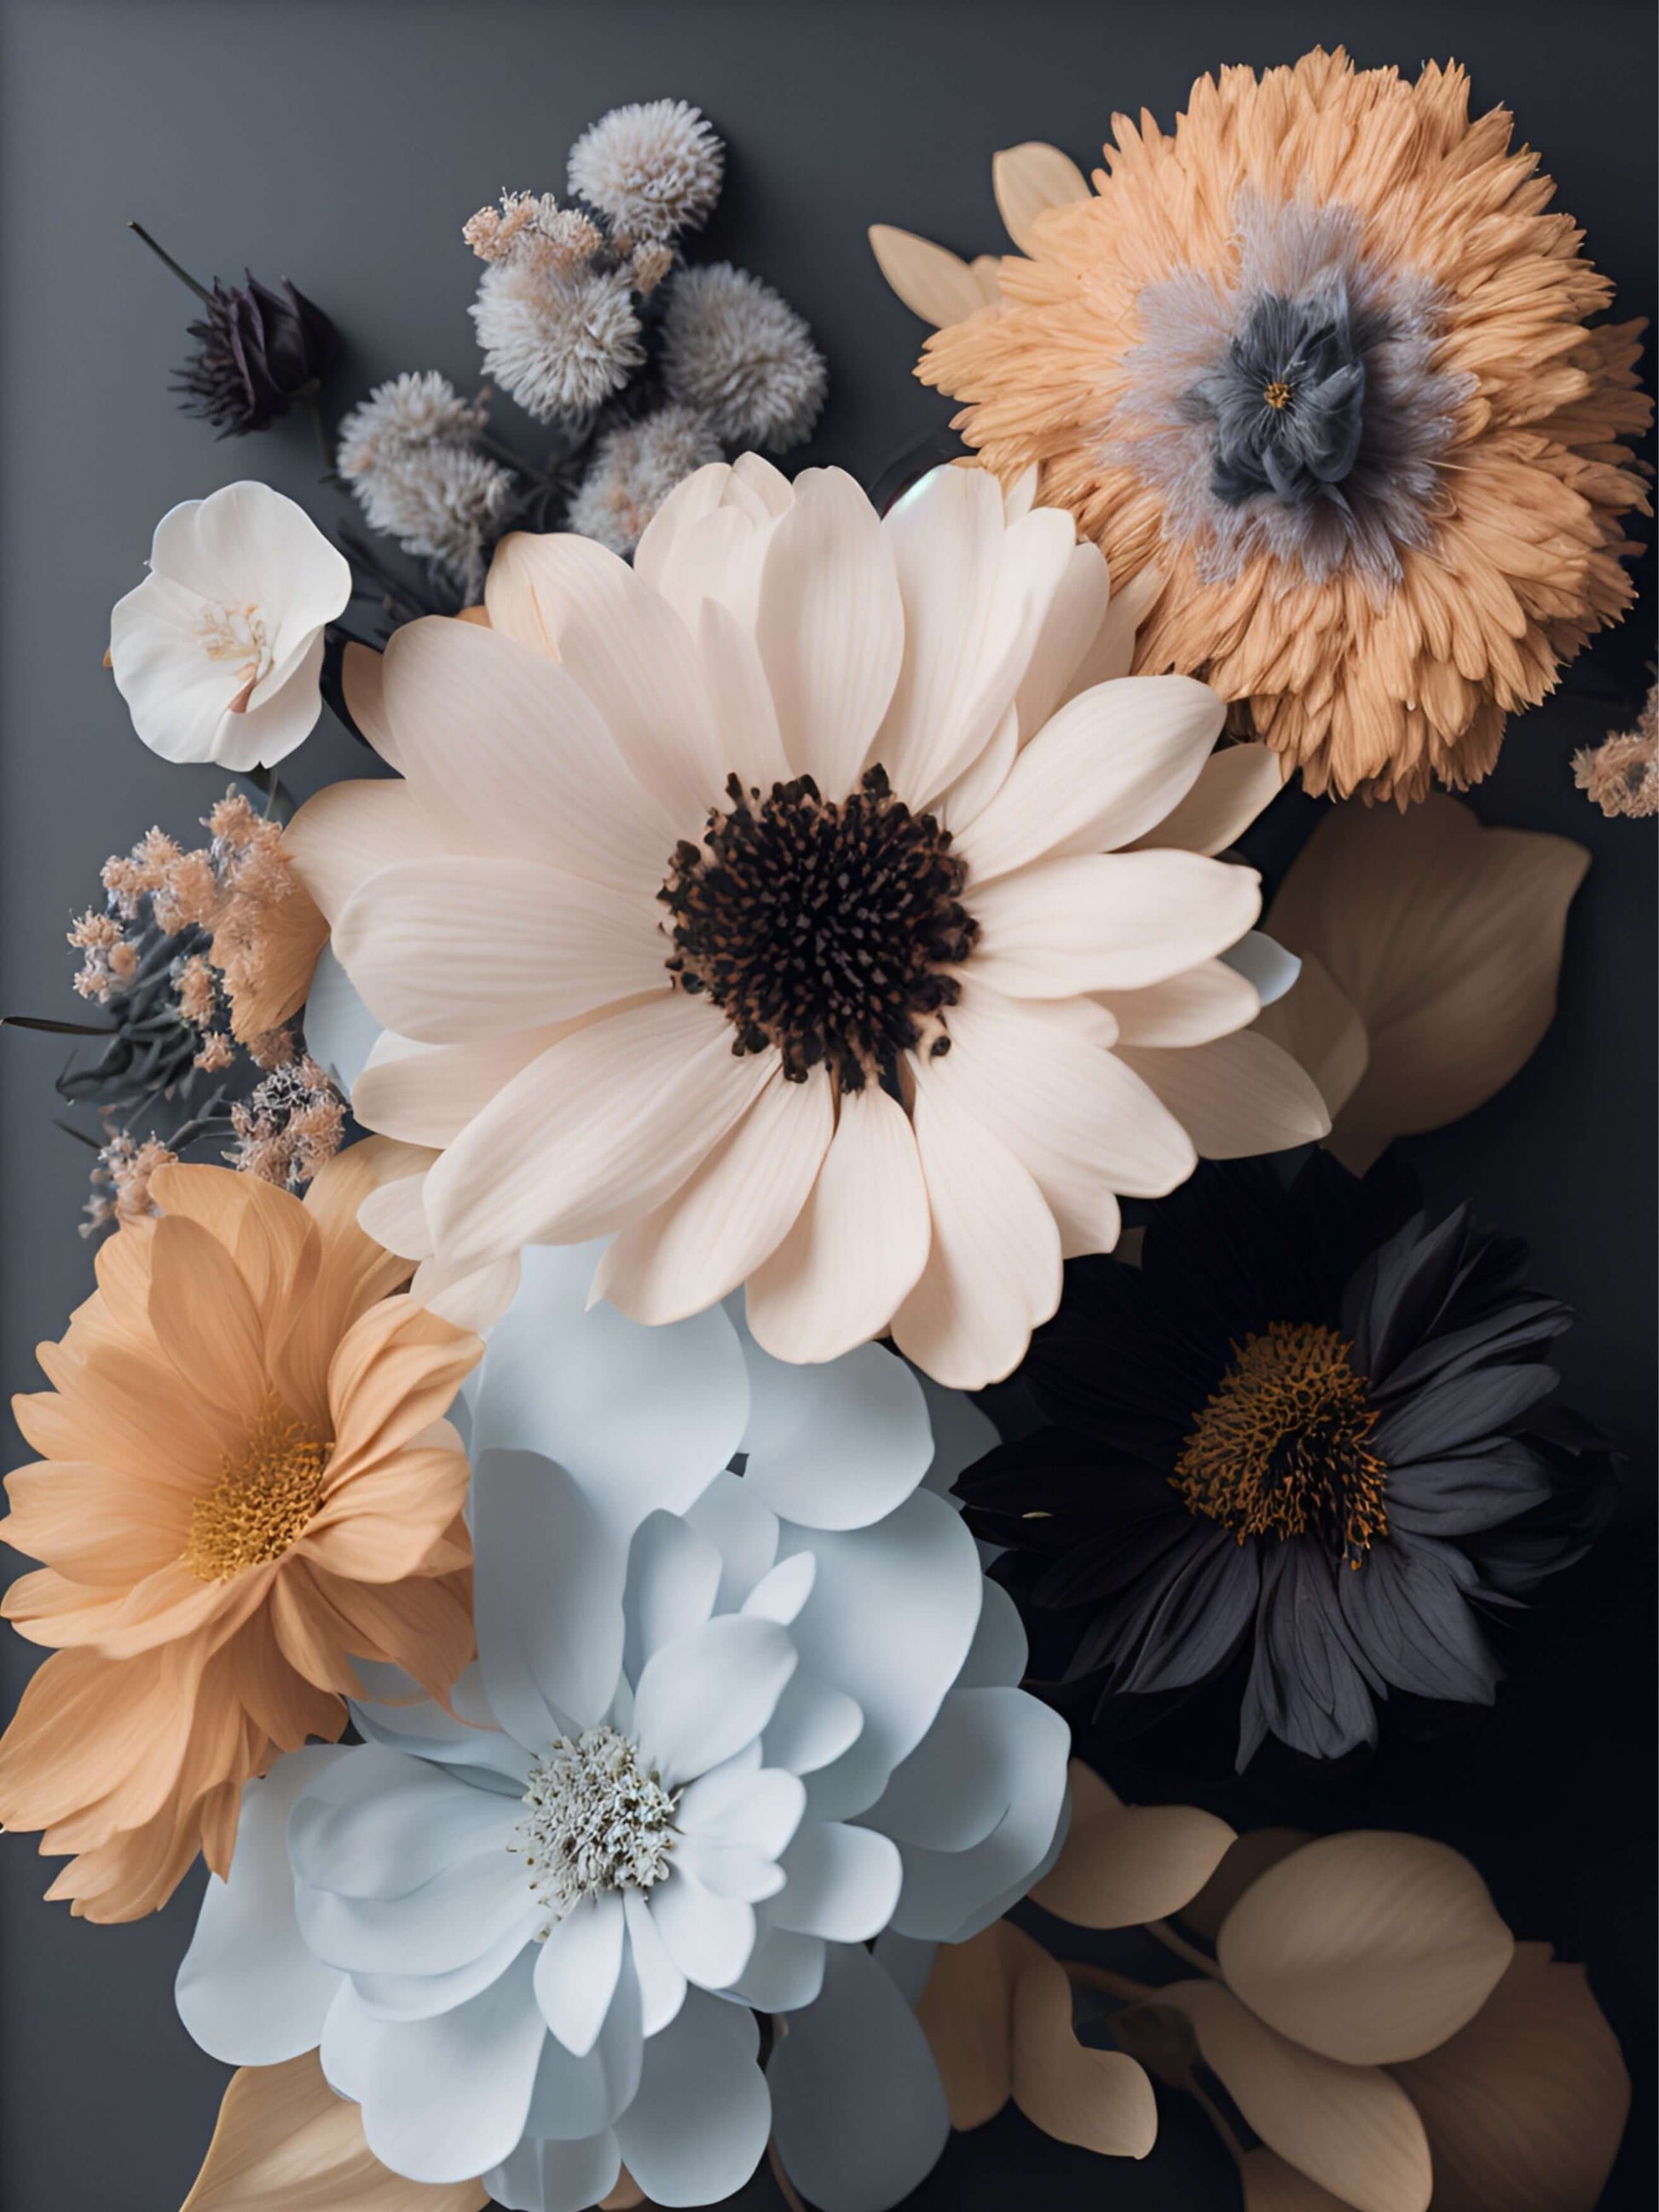 die Welt der Farben mit Fantasie Blumenpostern von Positive Pulse"